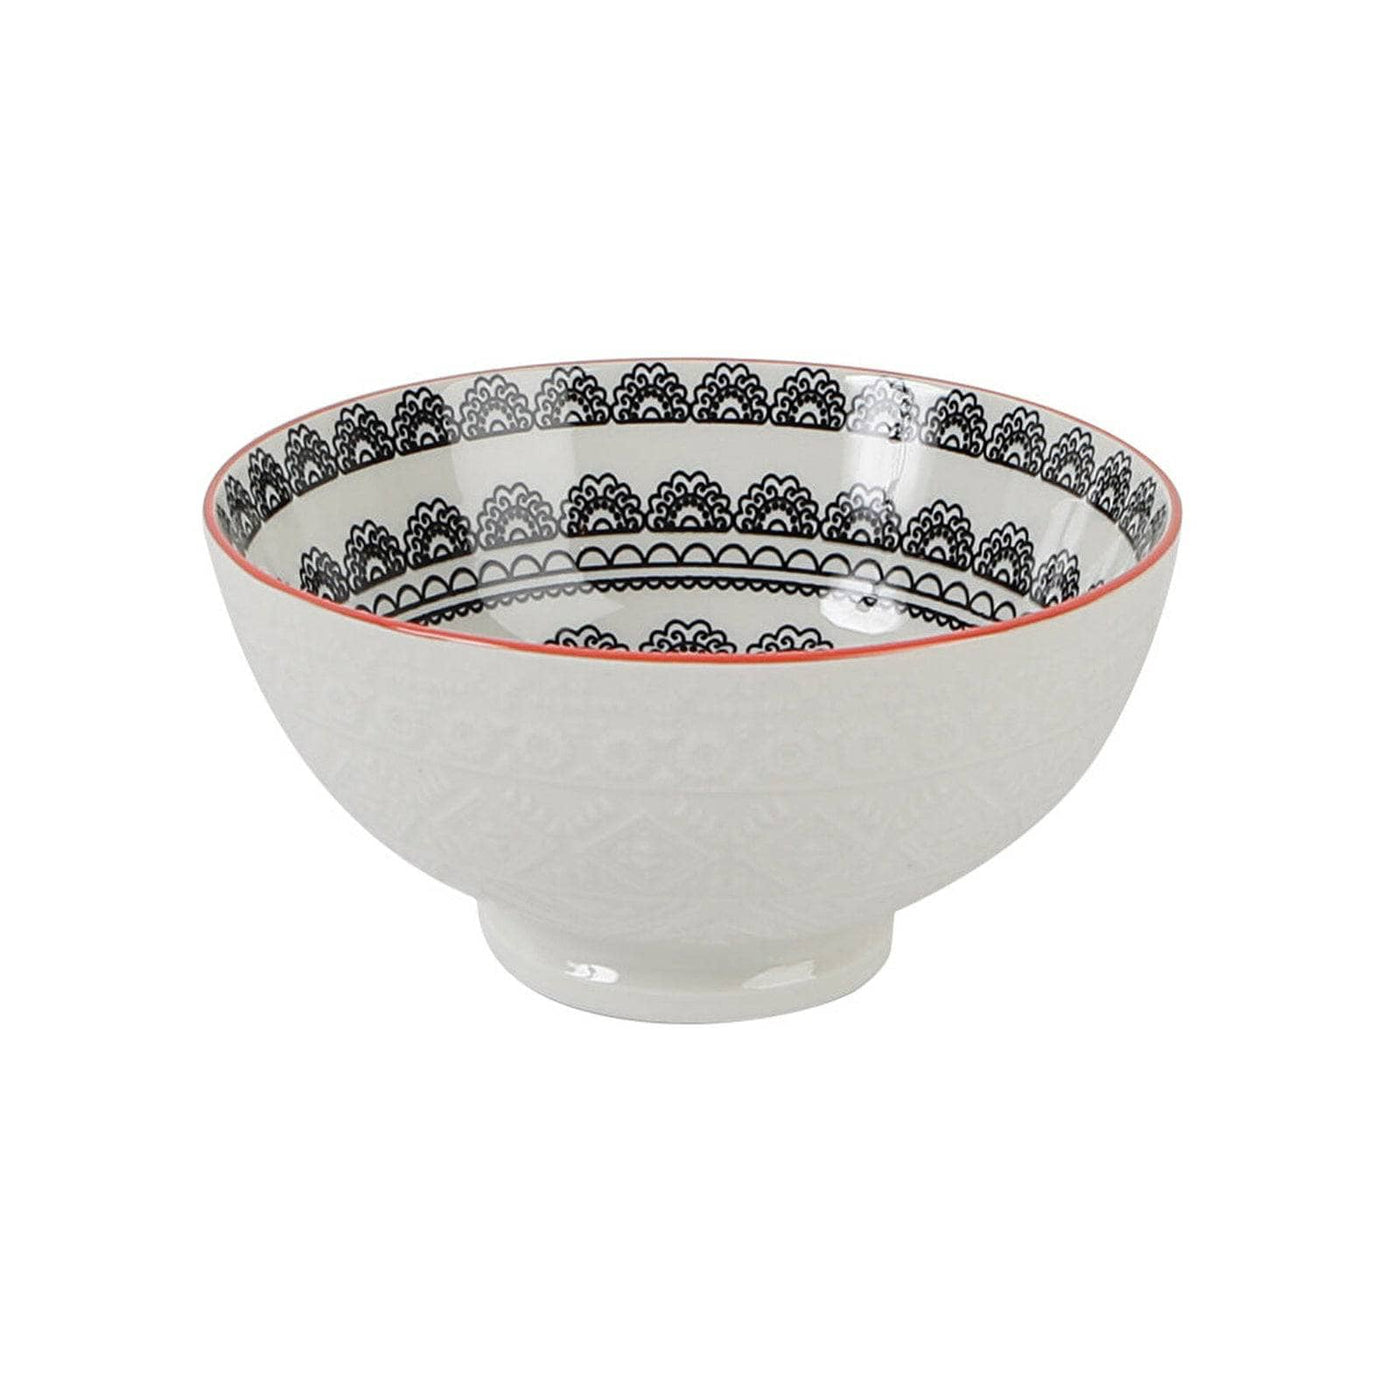 Arabesk Set of 6 Bowls, 15 cm Bowls sazy.com